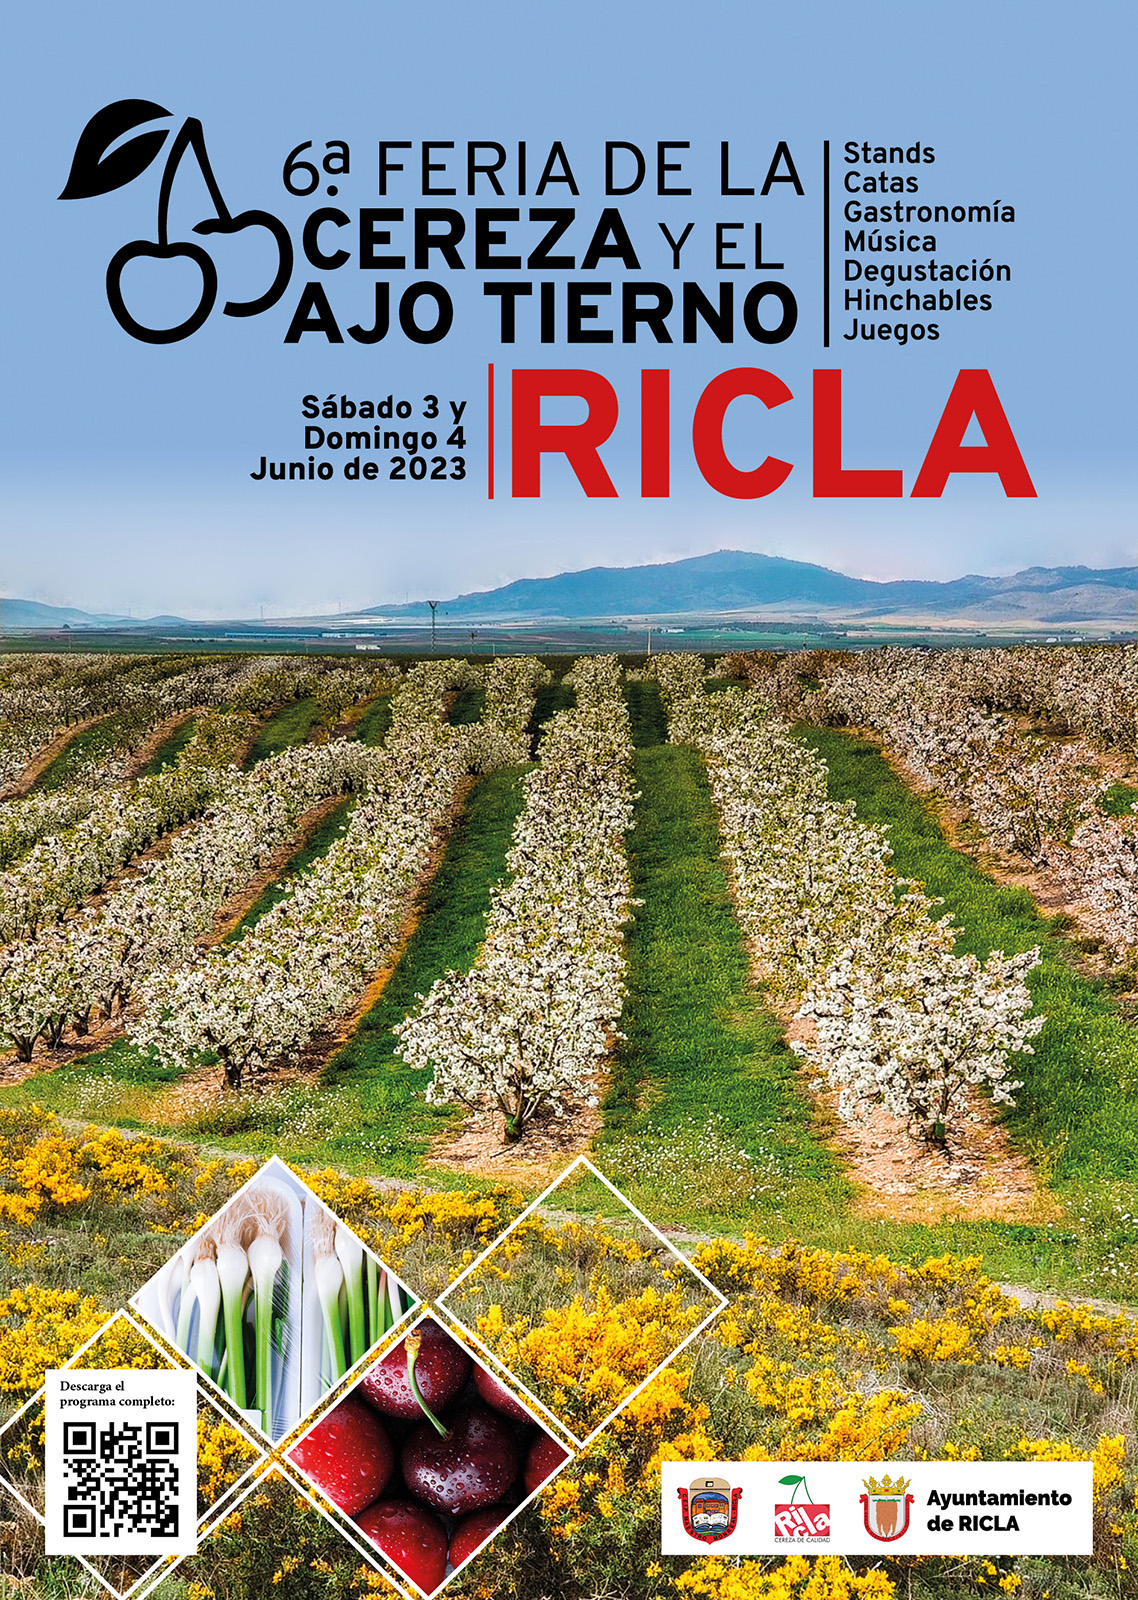 Publicidad VI Feria de la Cereza y el ajo tierno de Ricla